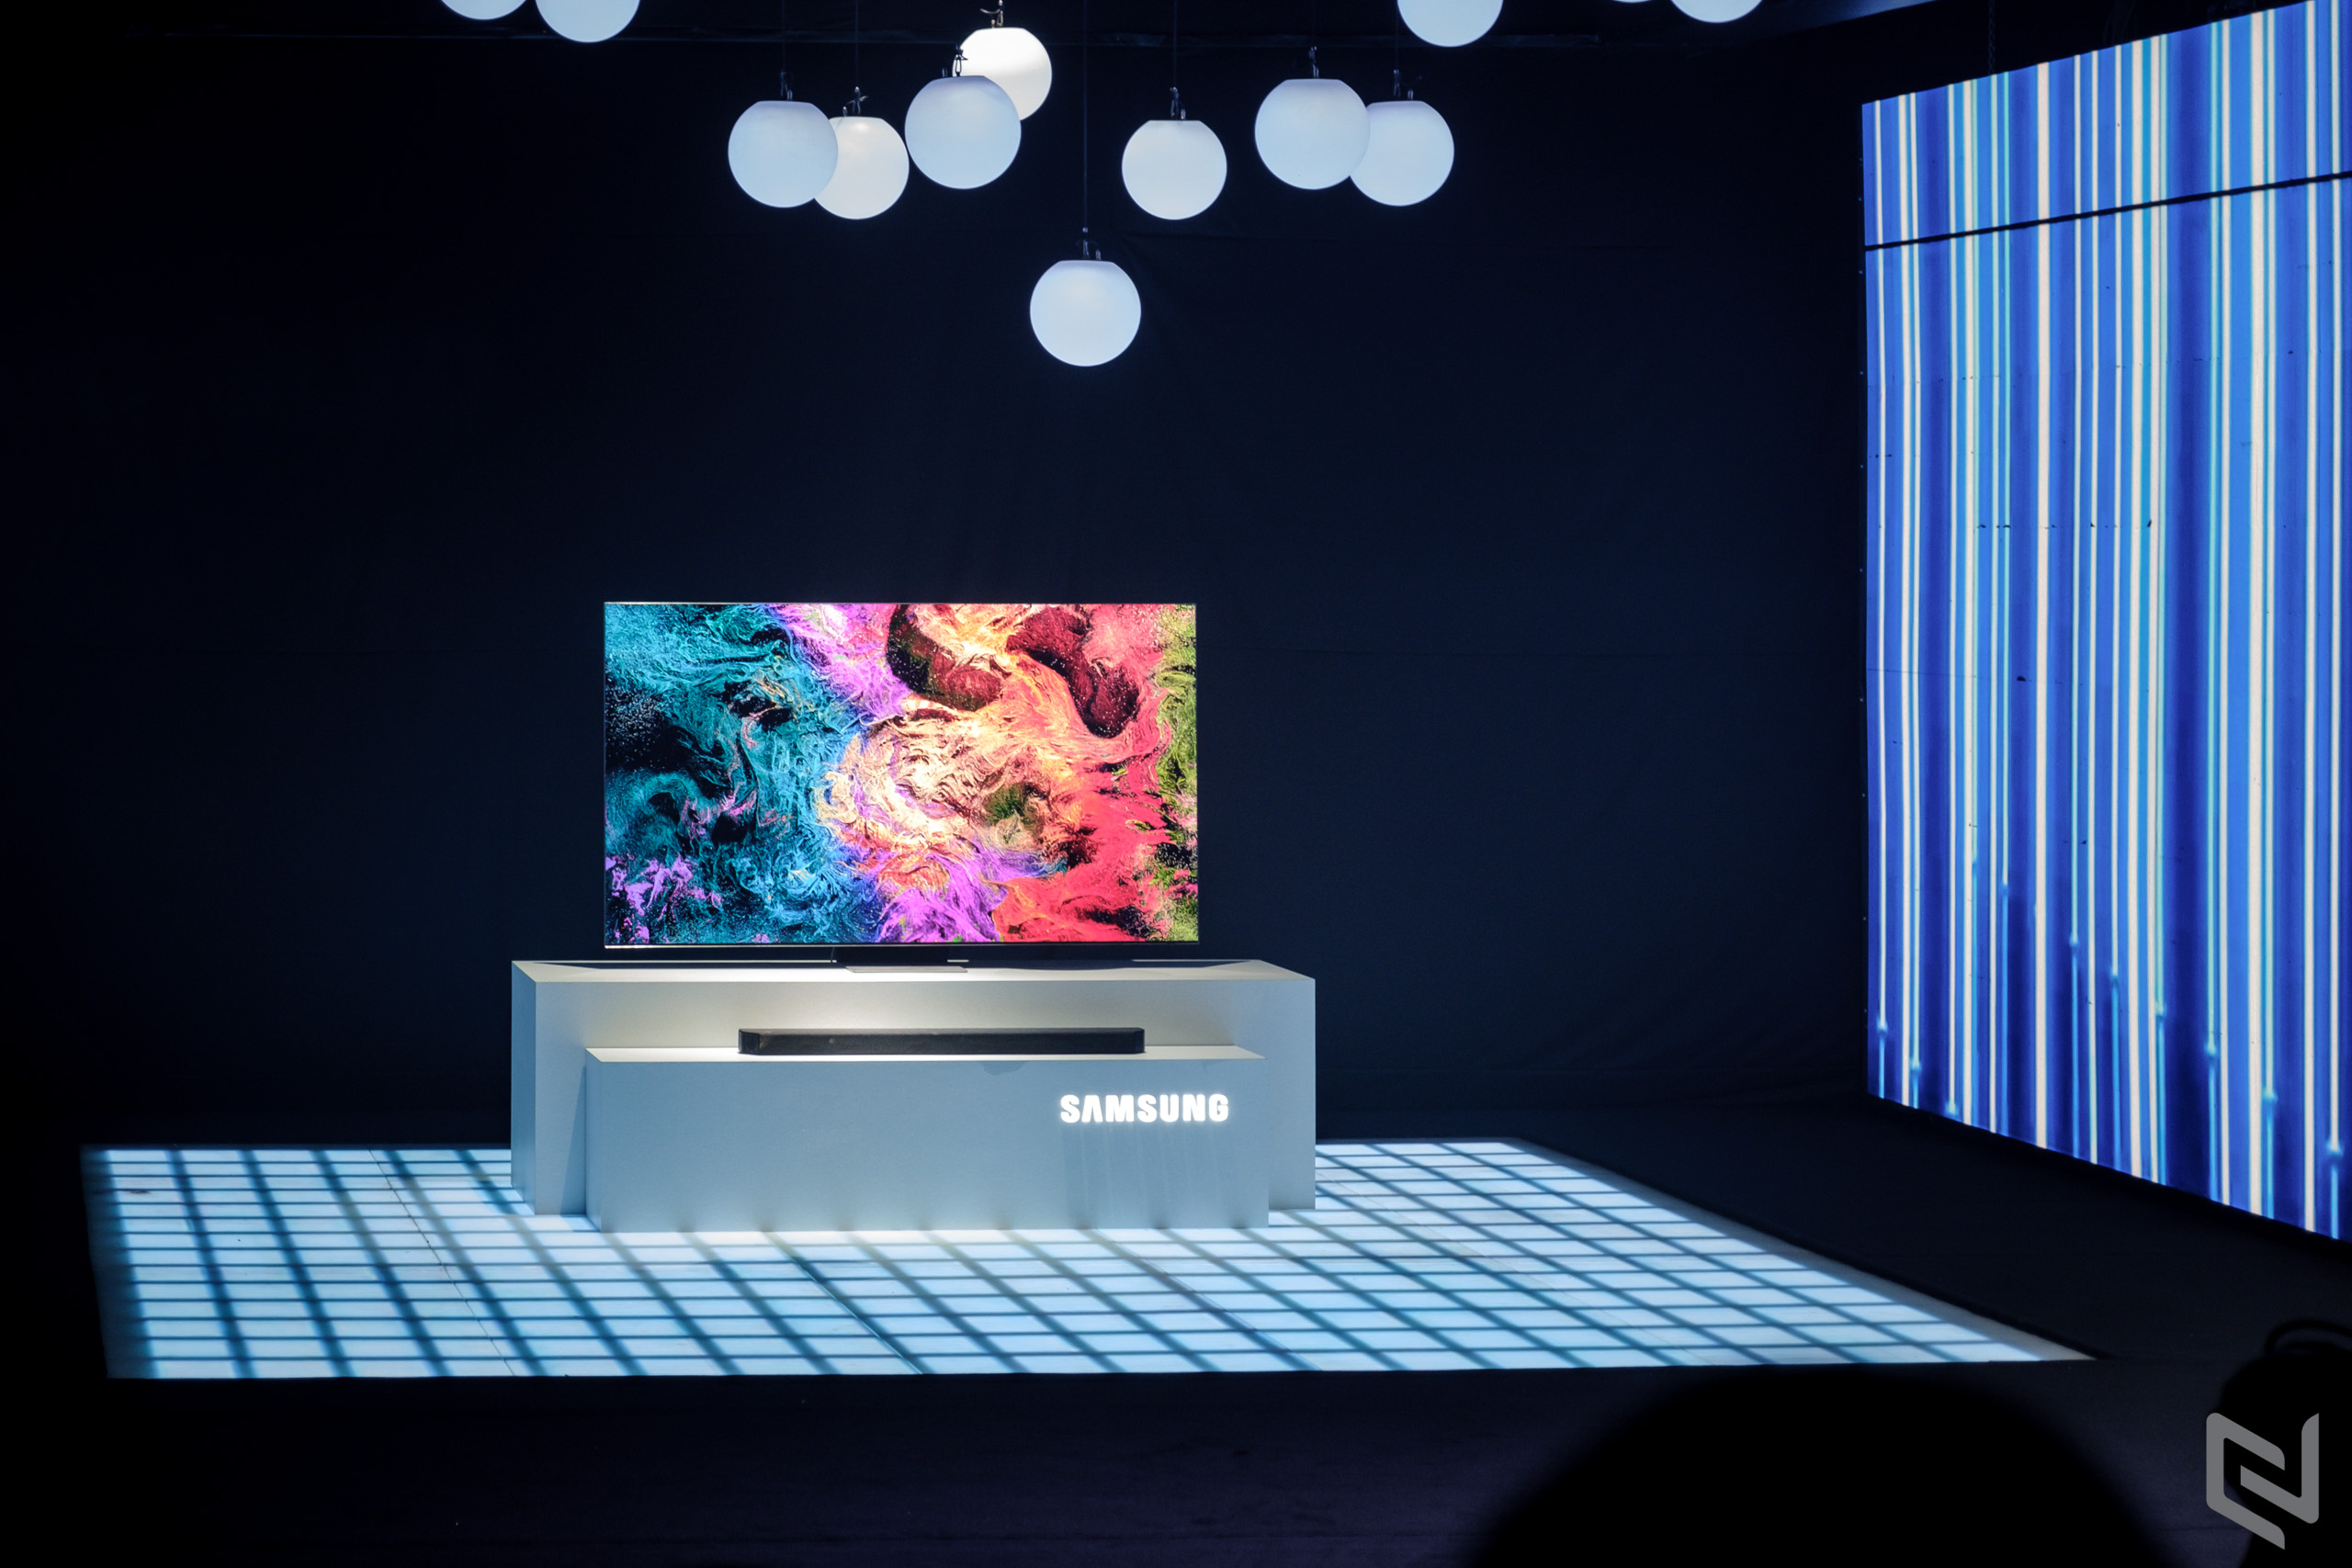 Samsung tiếp tục dẫn đầu thị trường TV toàn cầu trong 18 năm liên tiếp